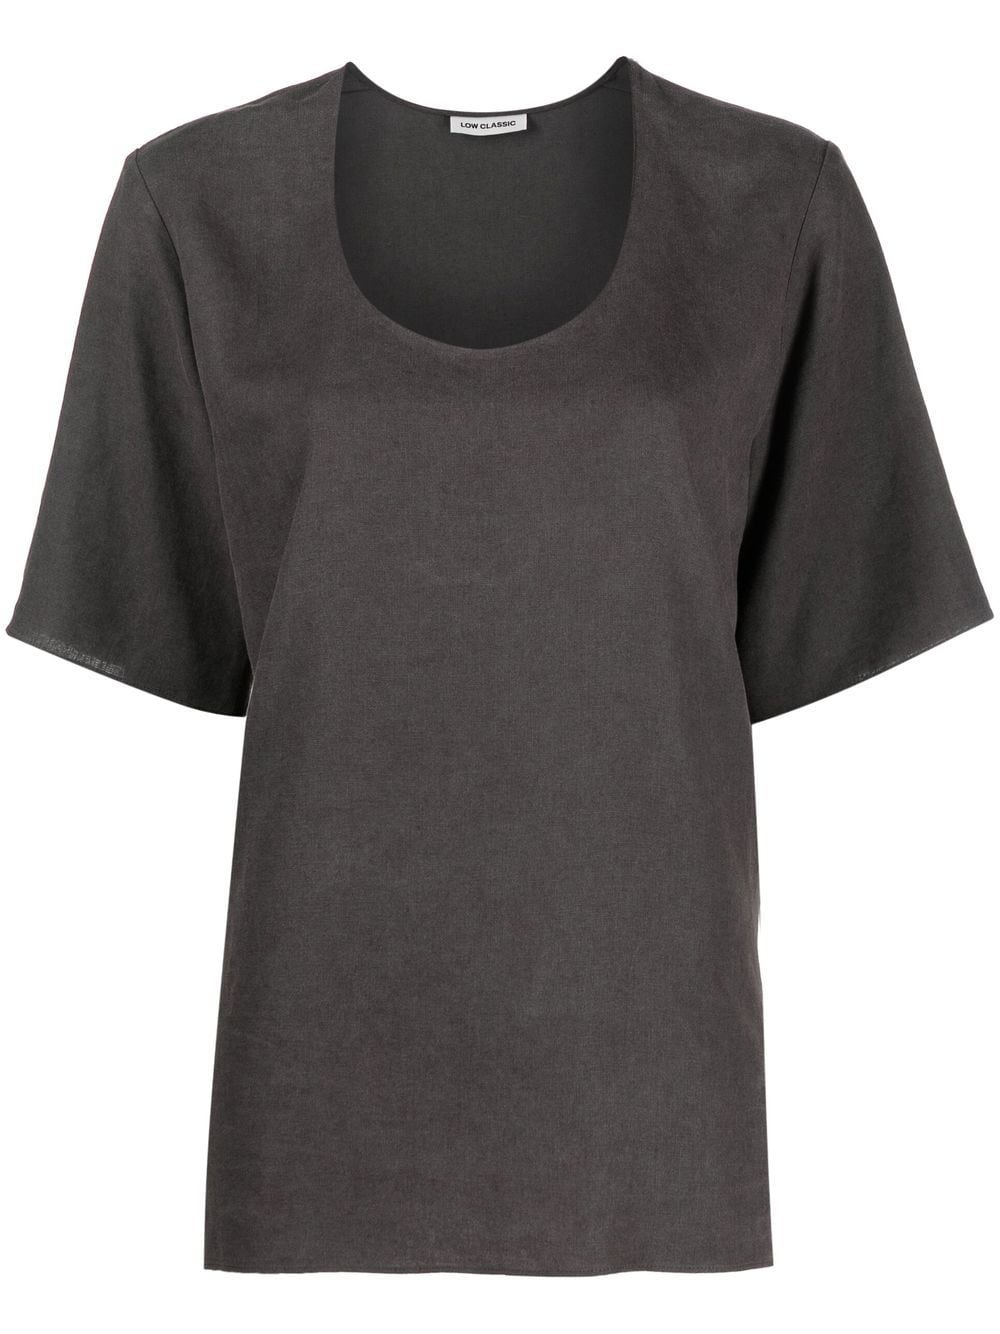 low classic t-shirt à encolure arrondie - gris